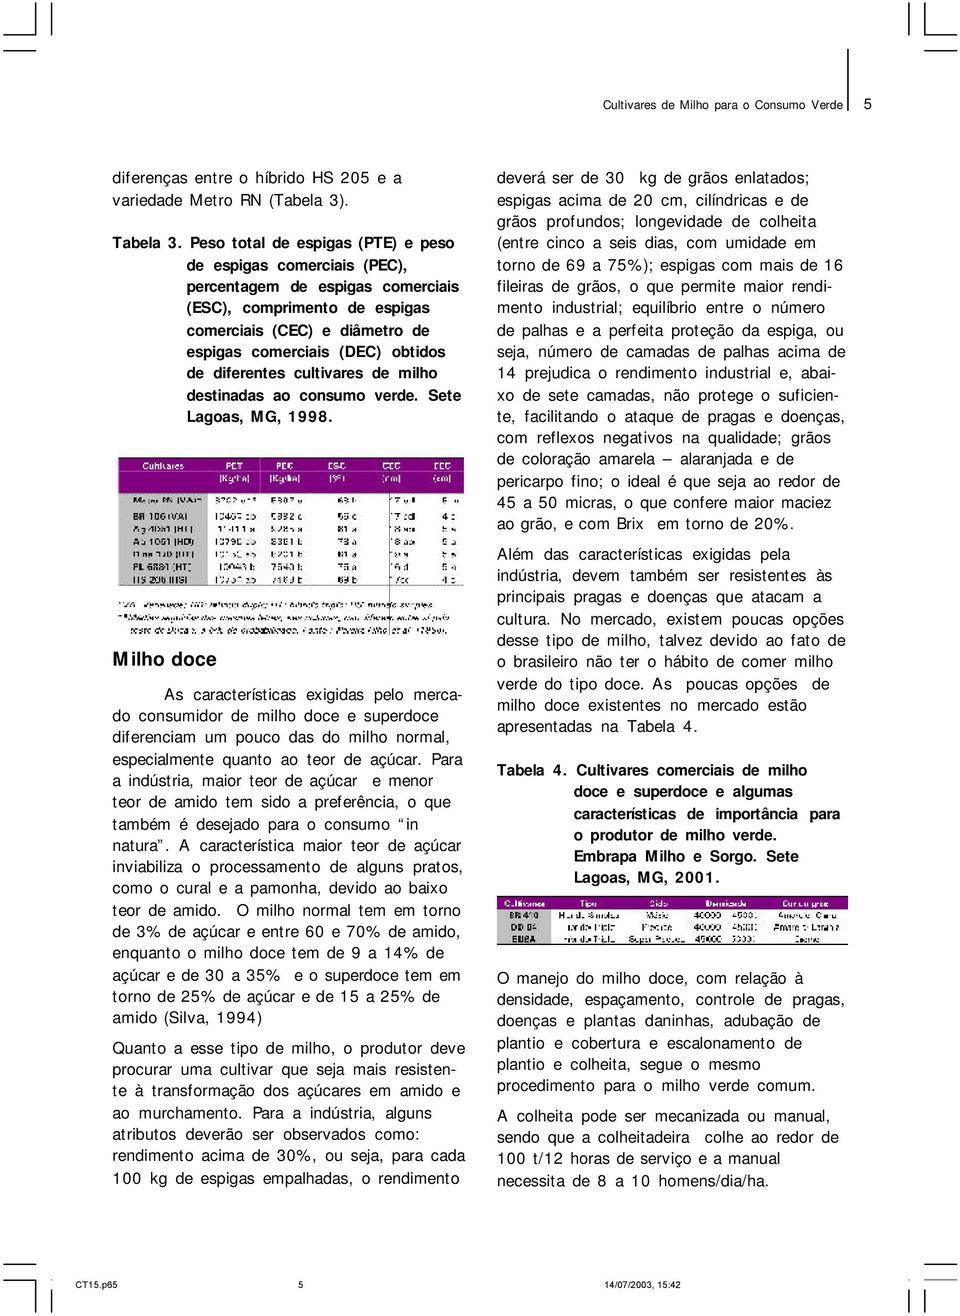 diferentes cultivares de milho destinadas ao consumo verde. Sete Lagoas, MG, 1998.